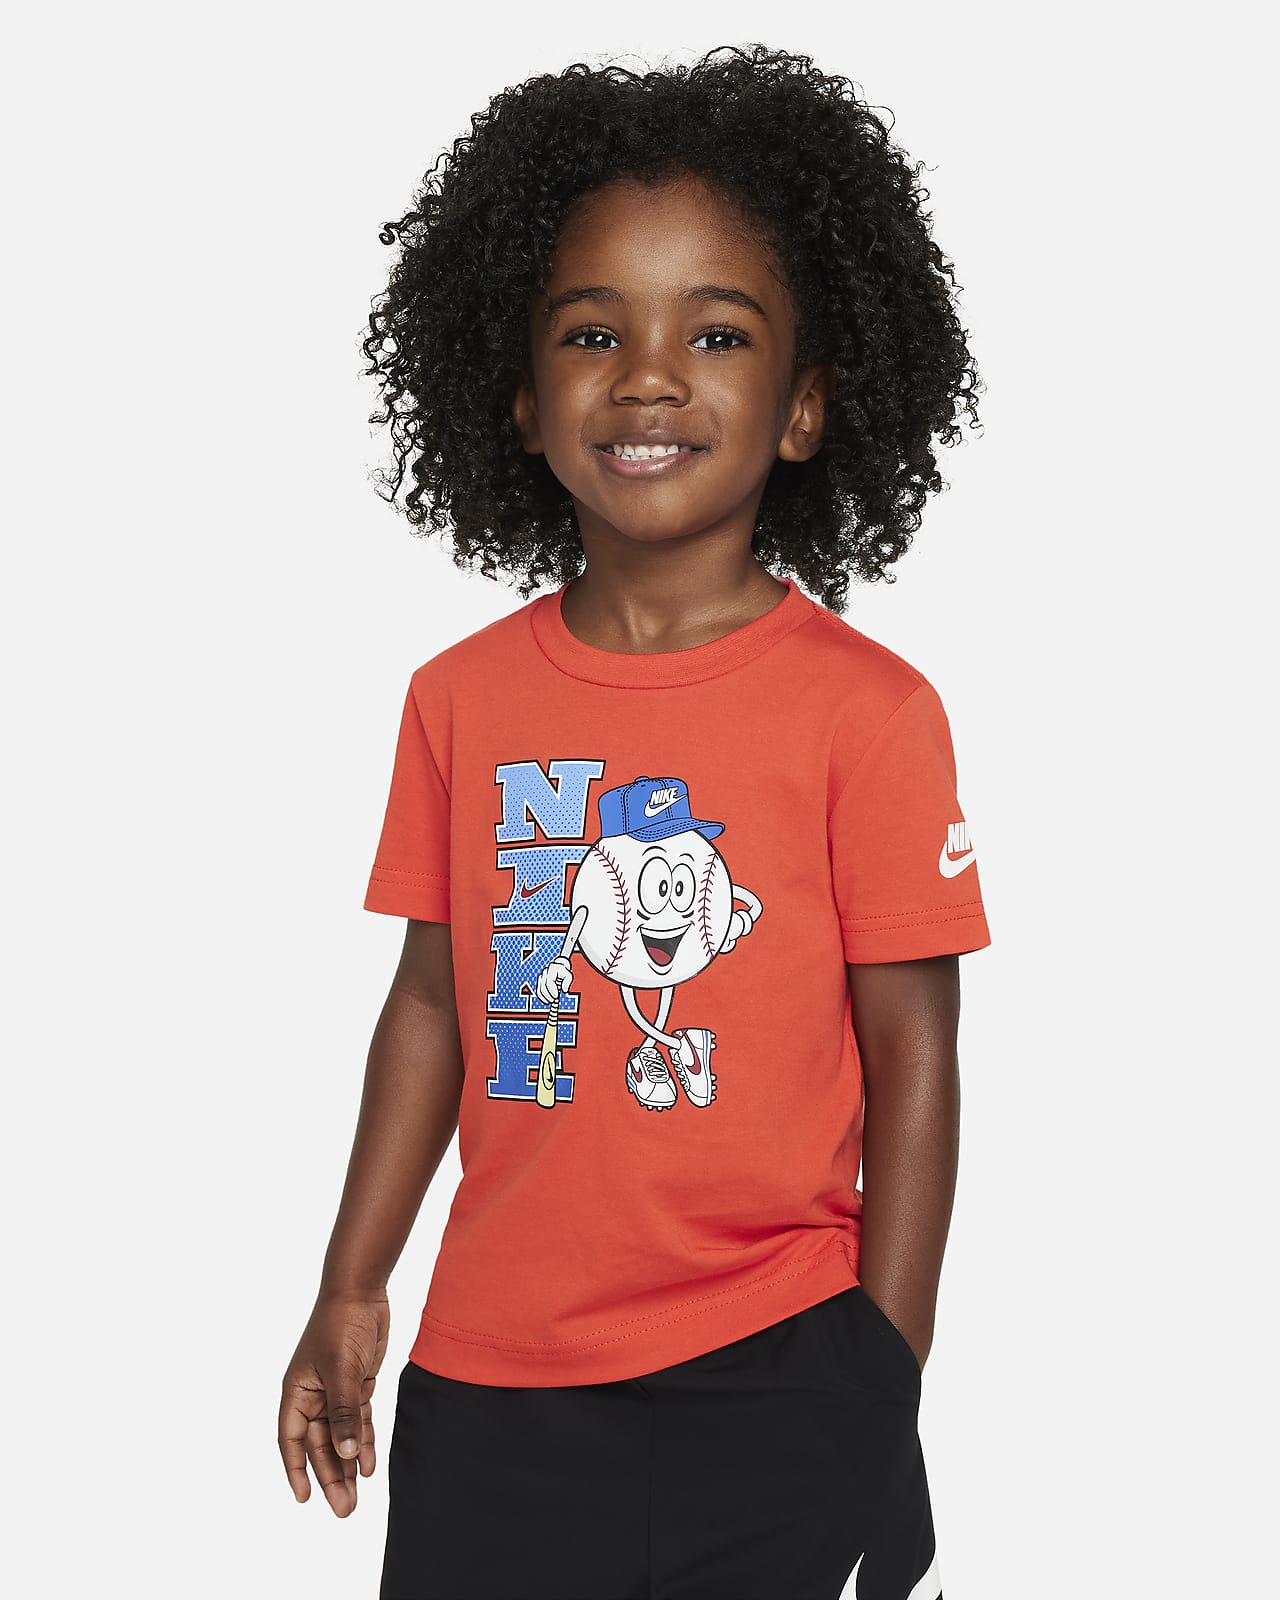 Nike Toddler Graphic T-Shirt